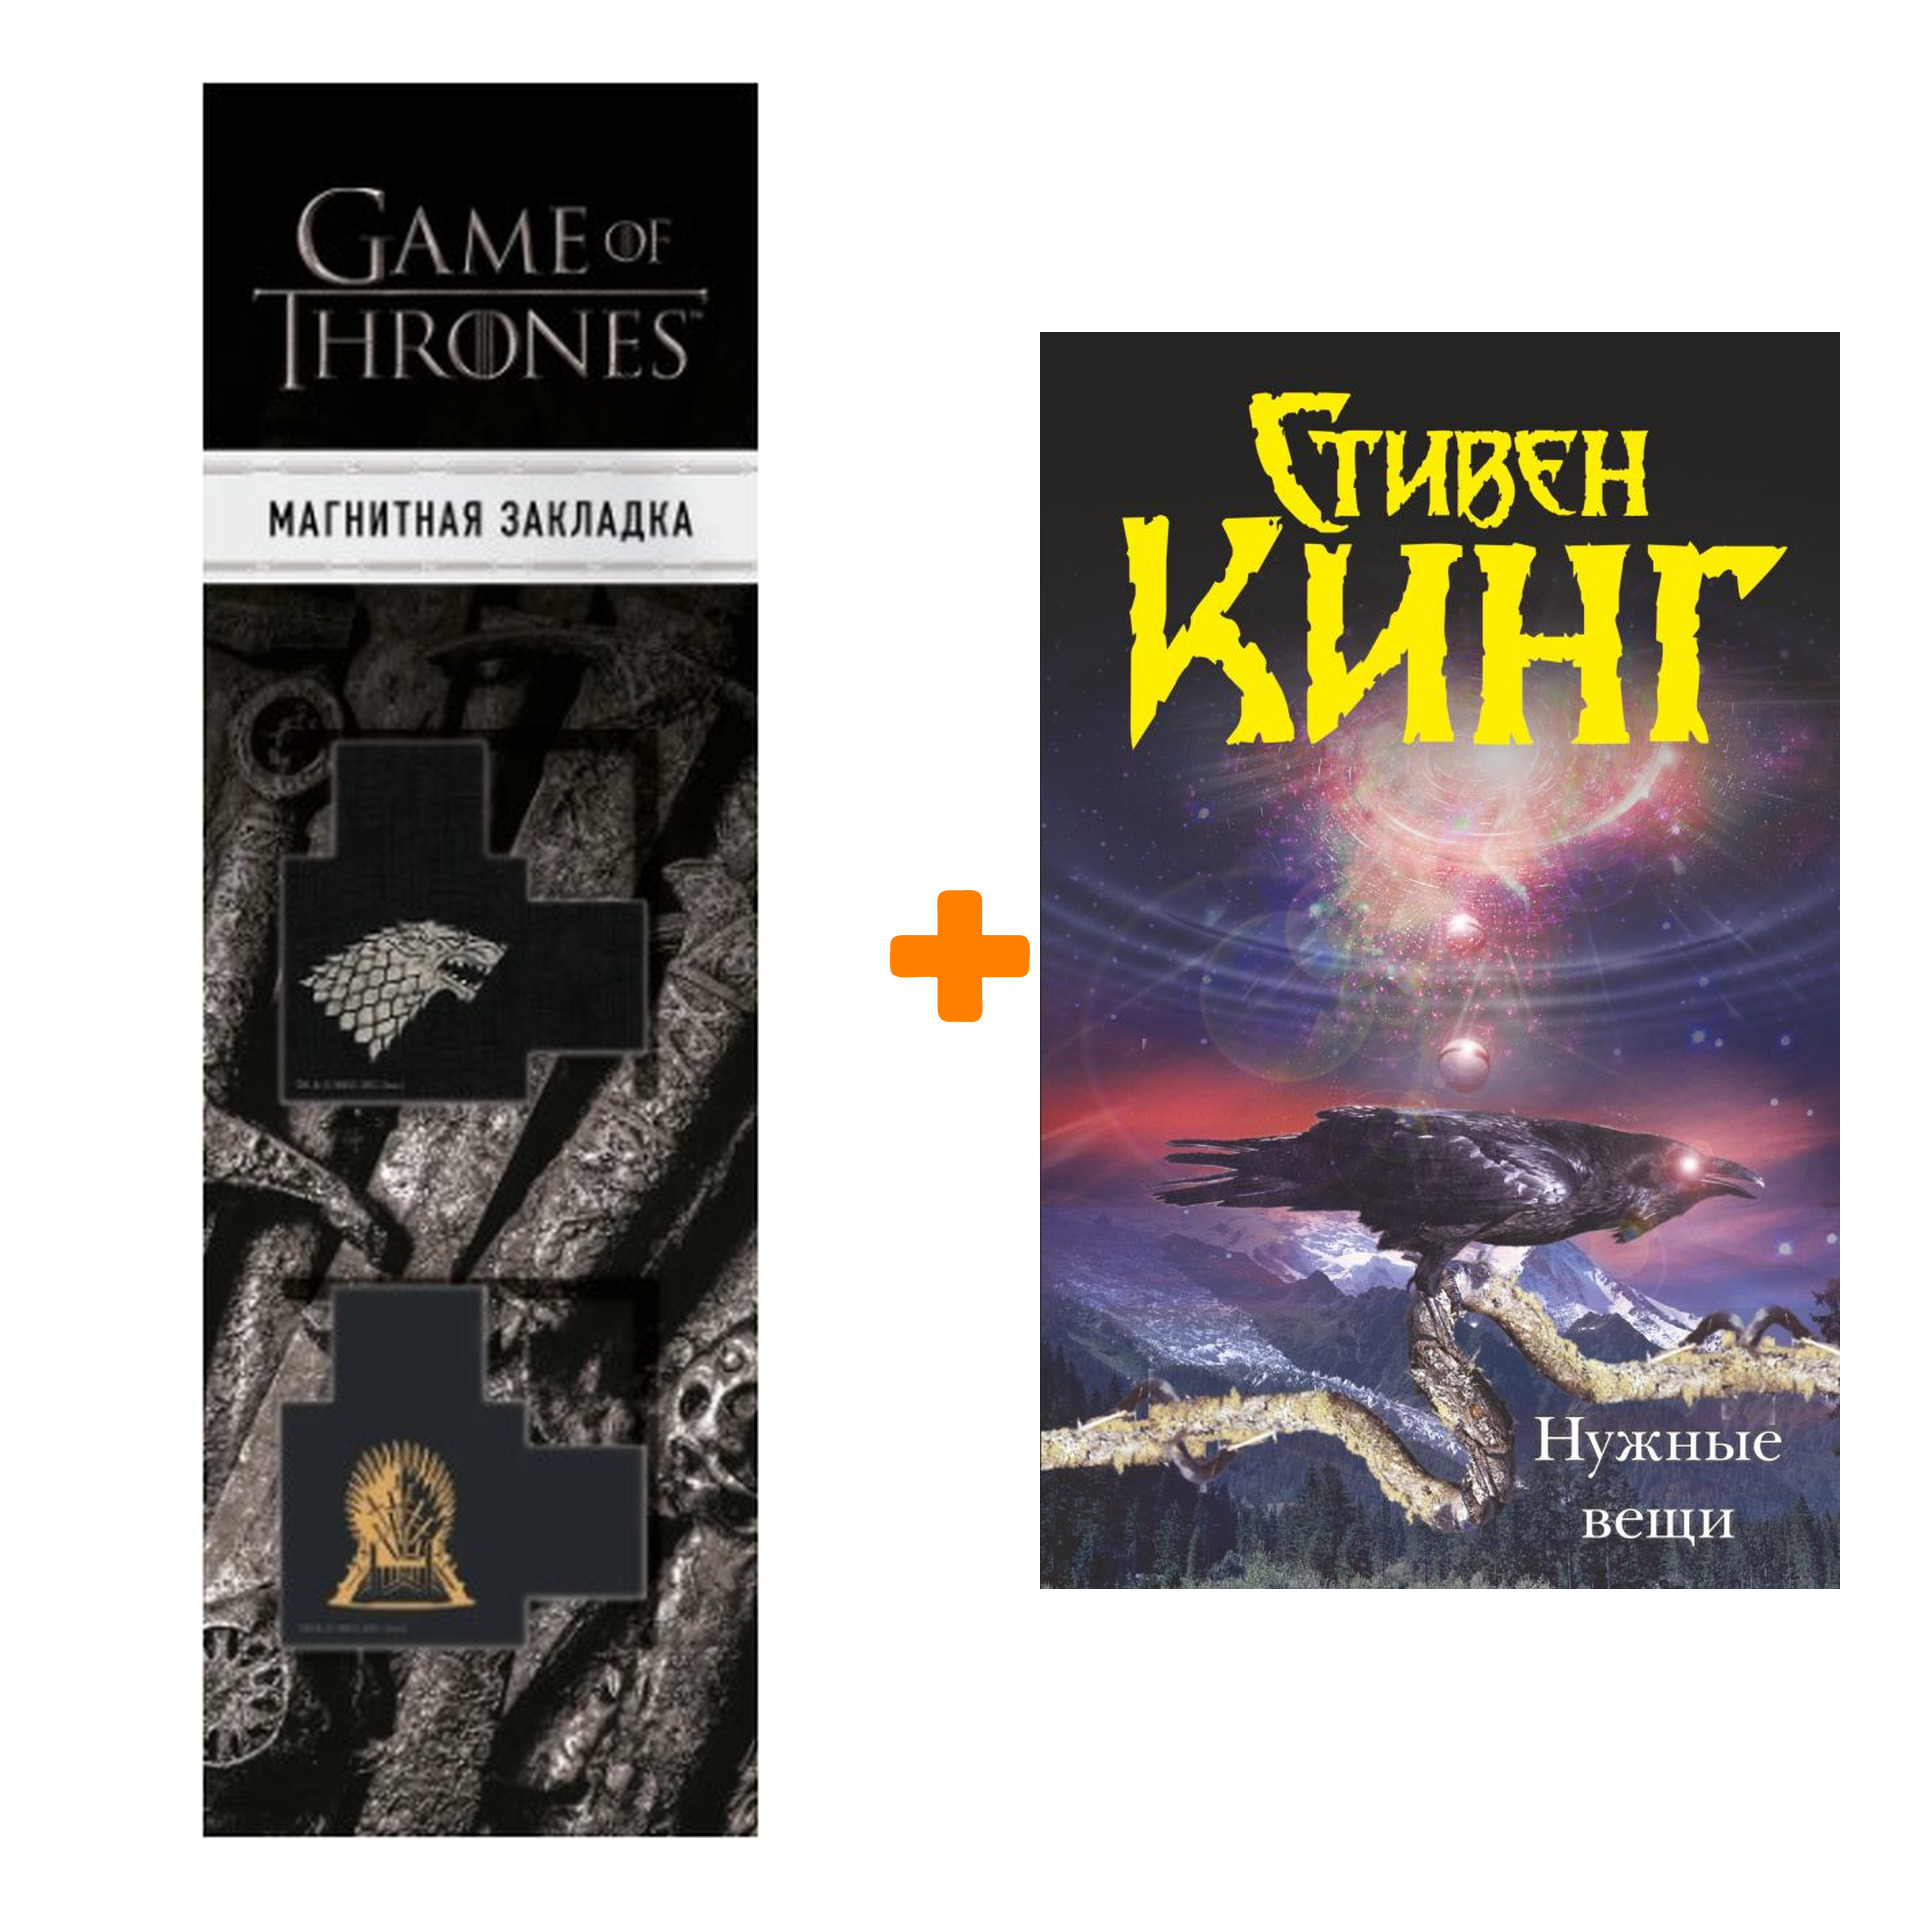 Набор Нужные вещи Кинг С. + Закладка Game Of Thrones Трон и Герб Старков магнитная 2-Pack